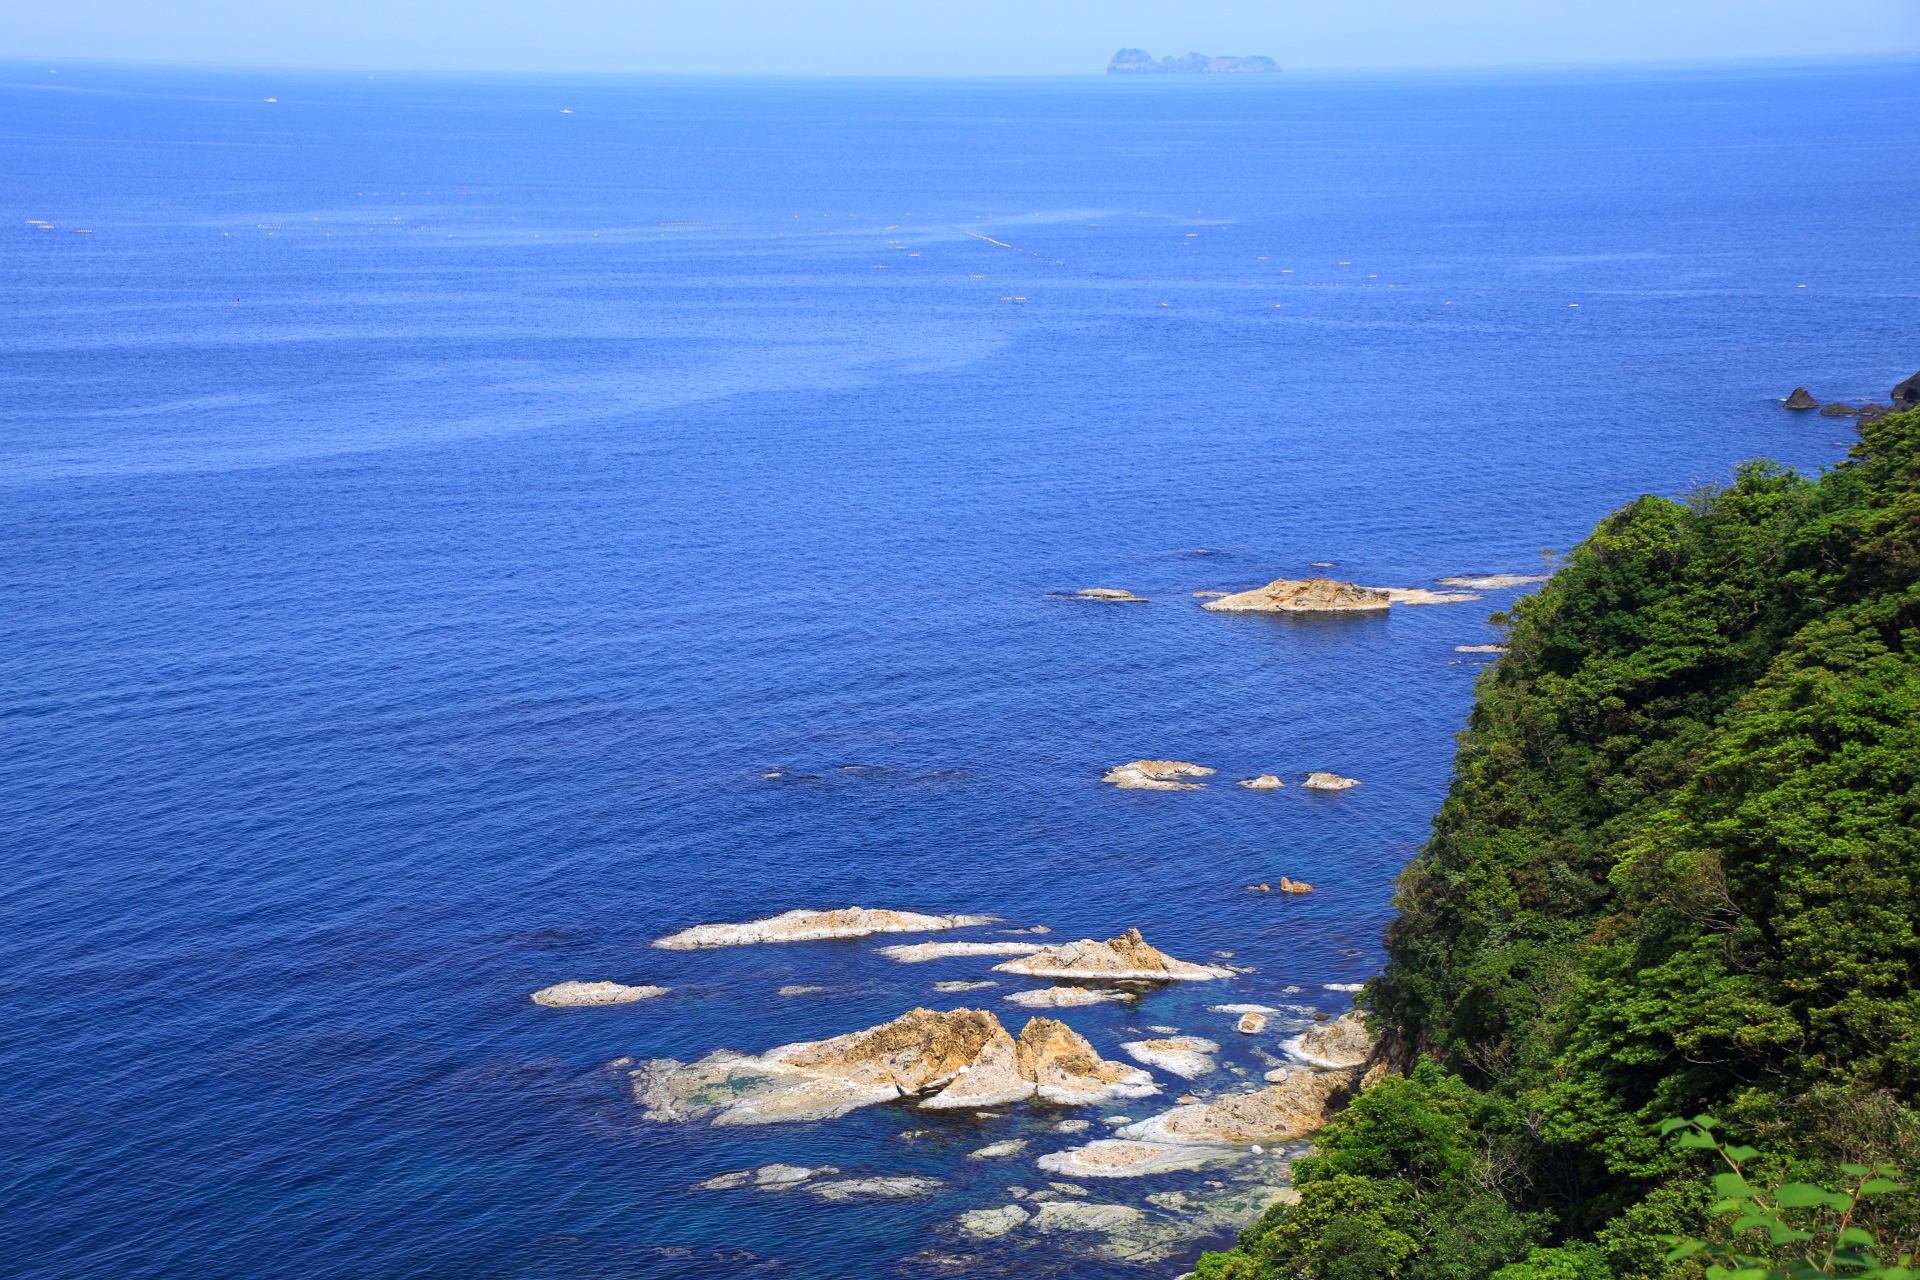 見事な青い海と沓島を臨む木々の生い茂った緑の断崖絶壁